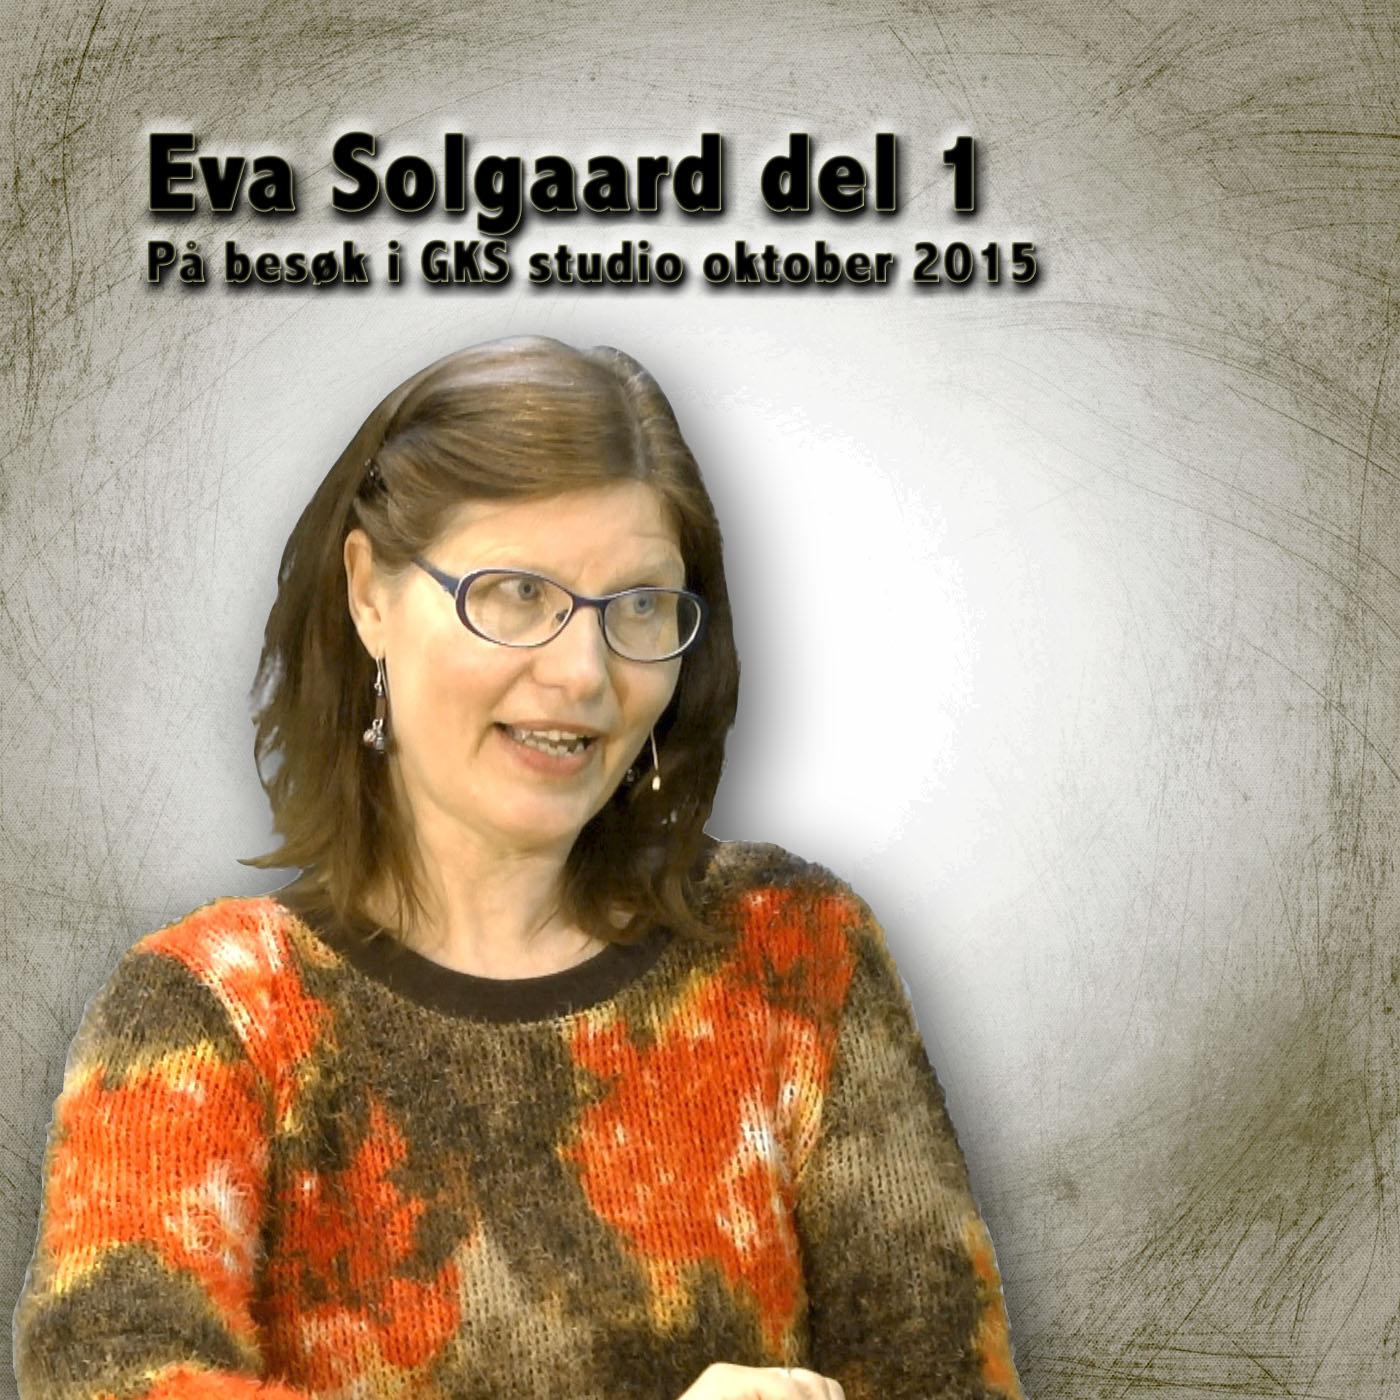 Eva Solgaard del 1